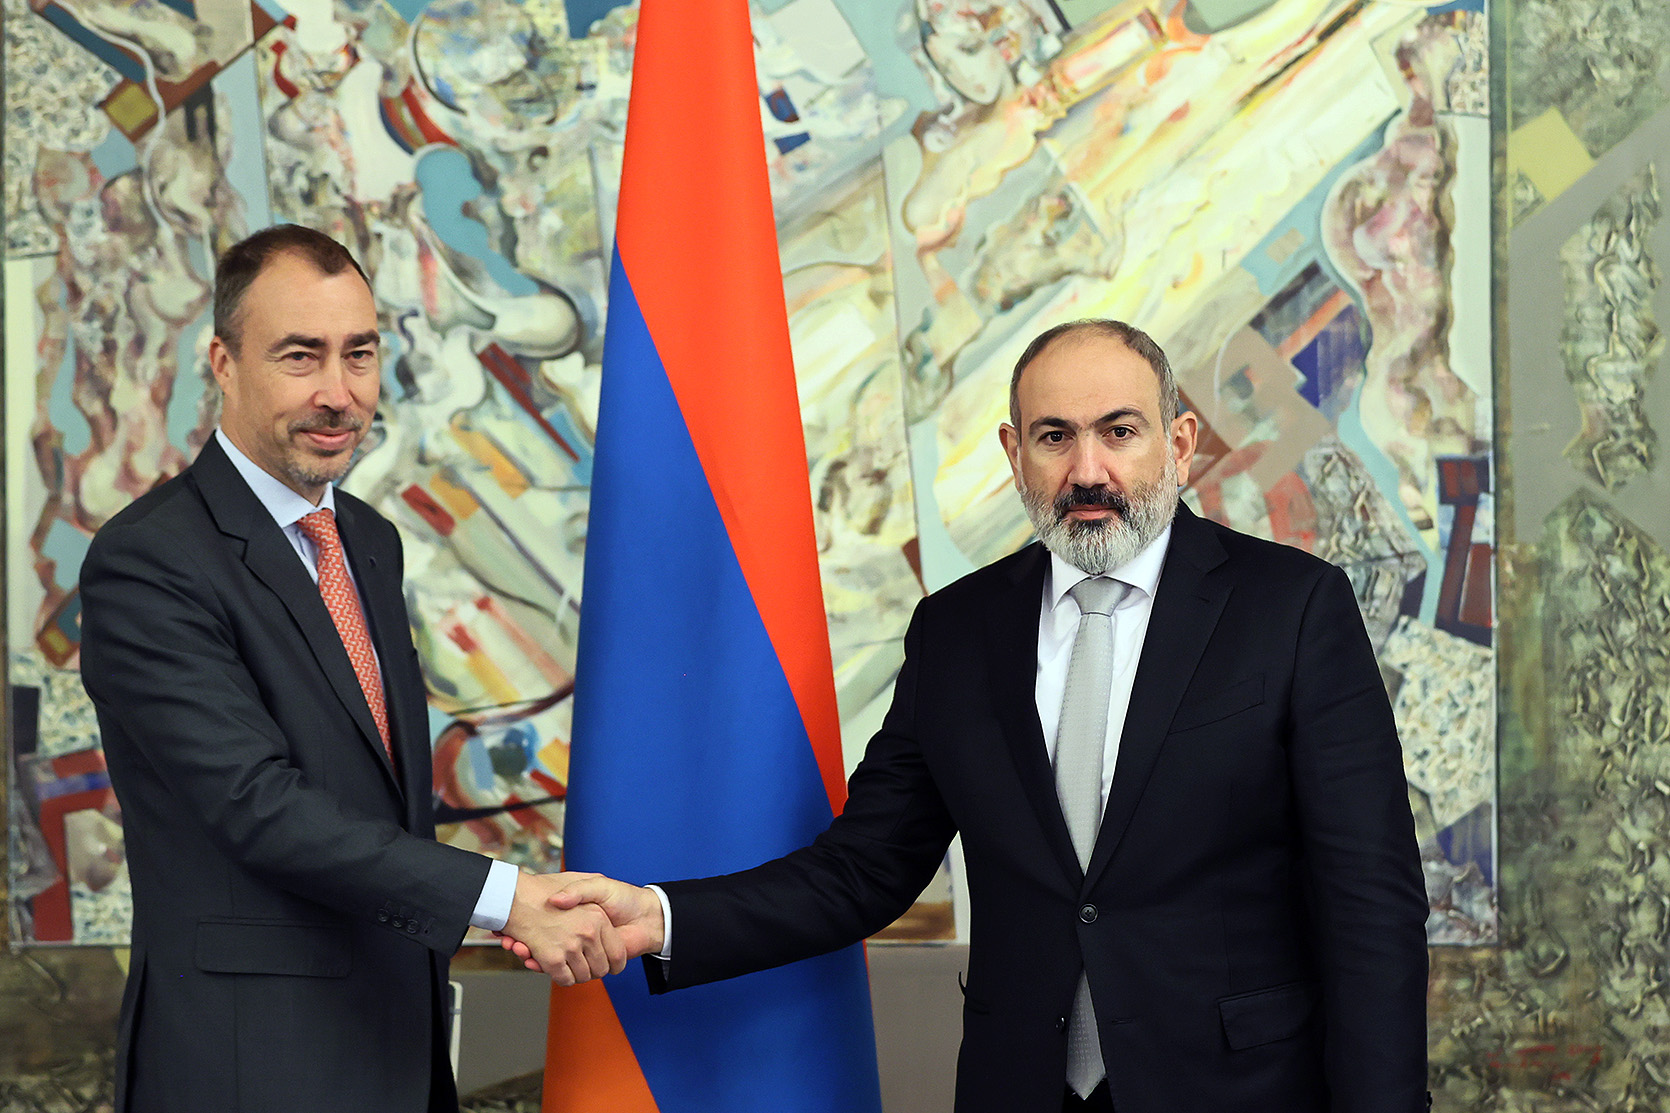 Փաշինյանը և Կլաարը կարևորել են ԵՄ քաղաքացիական առաքելության տեղակայումը Հայաստանում և անդրադարձել առաքելության գործունեությանը